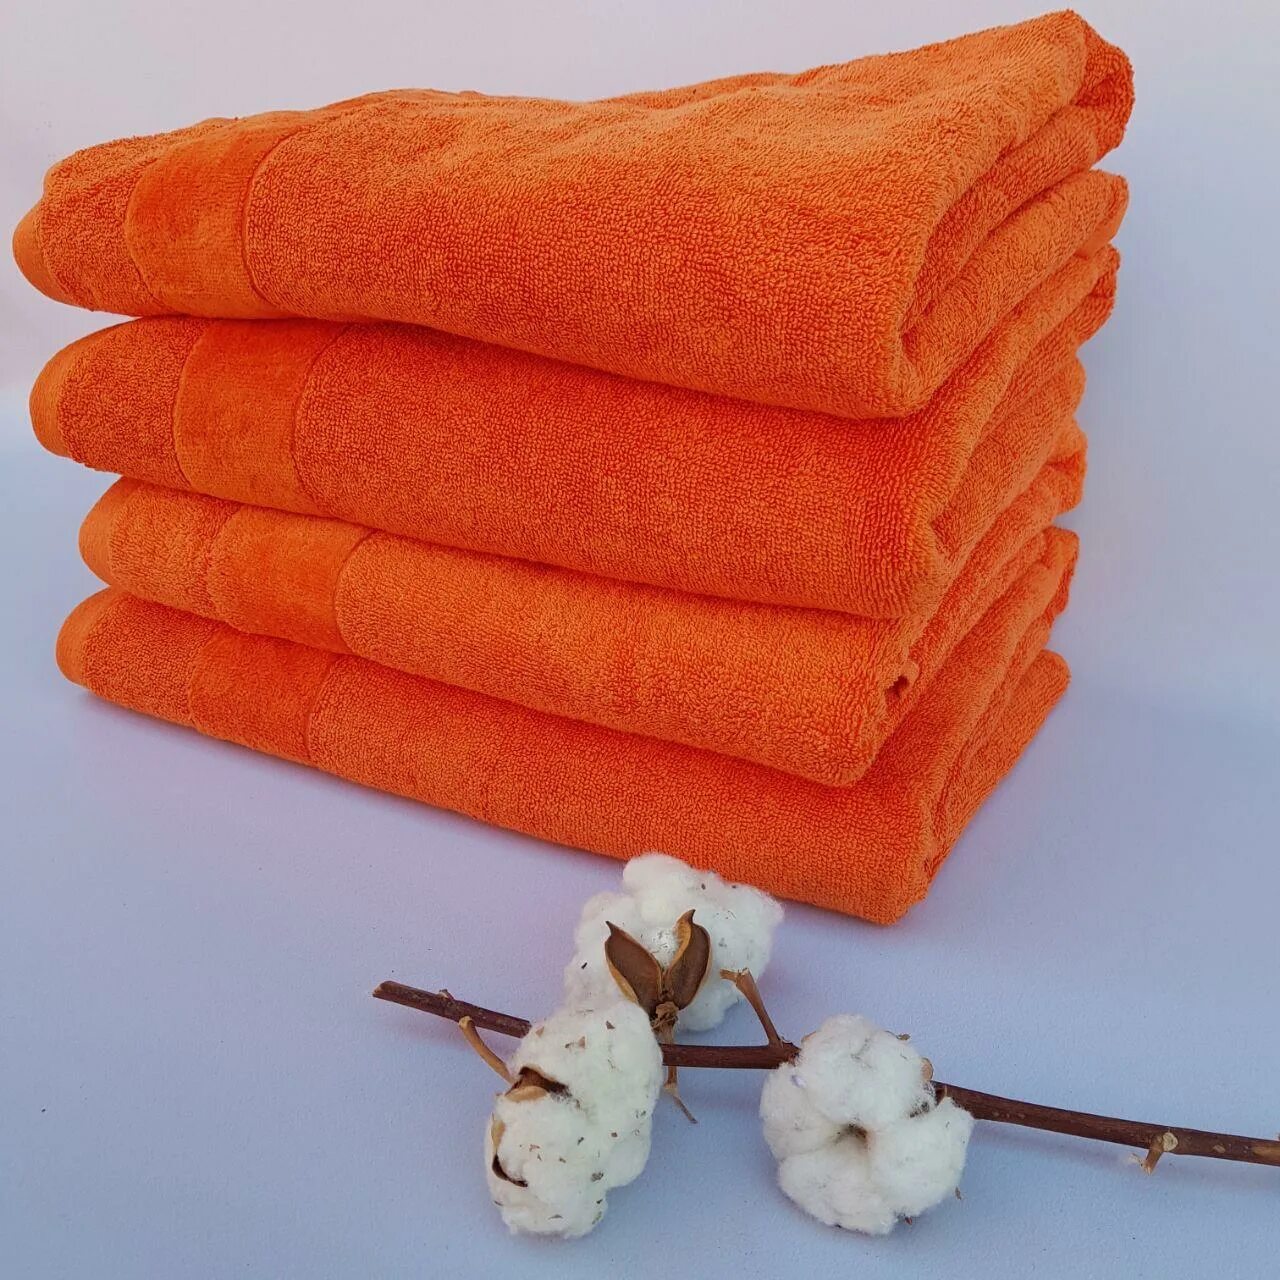 Полотенце Орион оранж. Банное полотенце оранжевое. Полотенце махровое оранжевое. Оранжевое полотенце